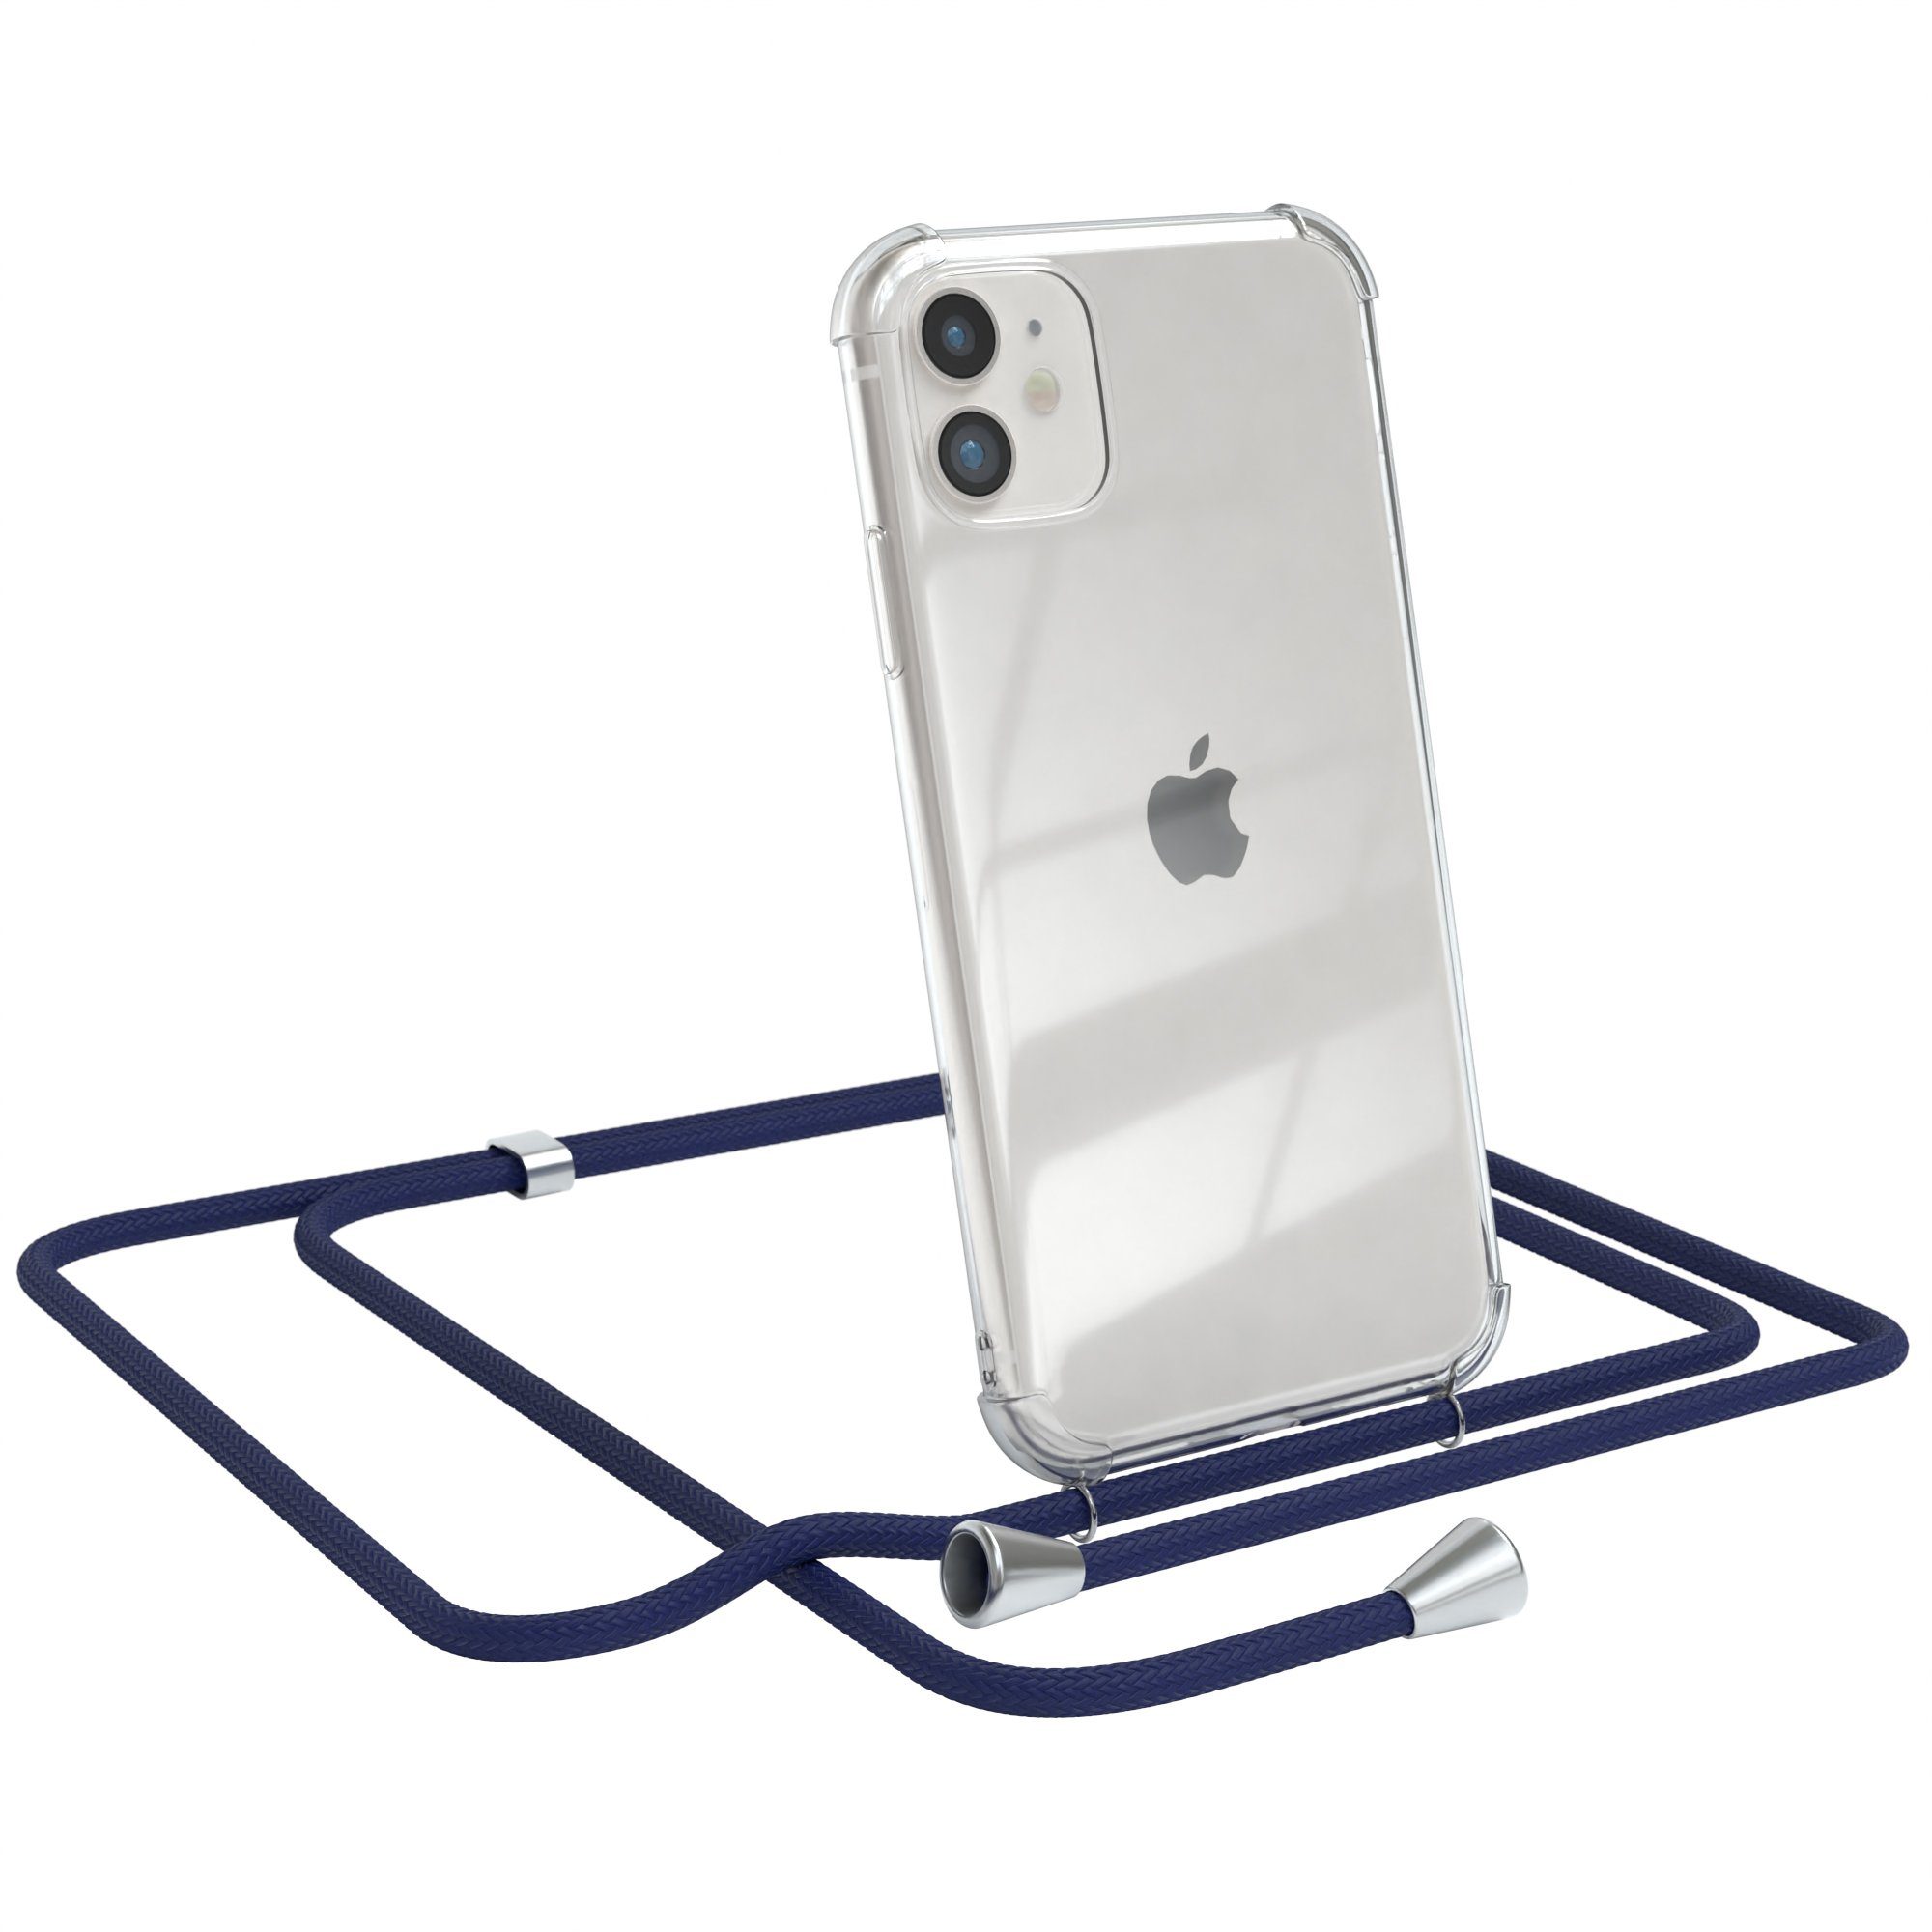 EAZY CASE Handykette Hülle mit Kette für Apple iPhone 11 6,1 Zoll, Kette zum Umhängen Backcover Etui Schutzhülle Hülle mit Band Case Blau